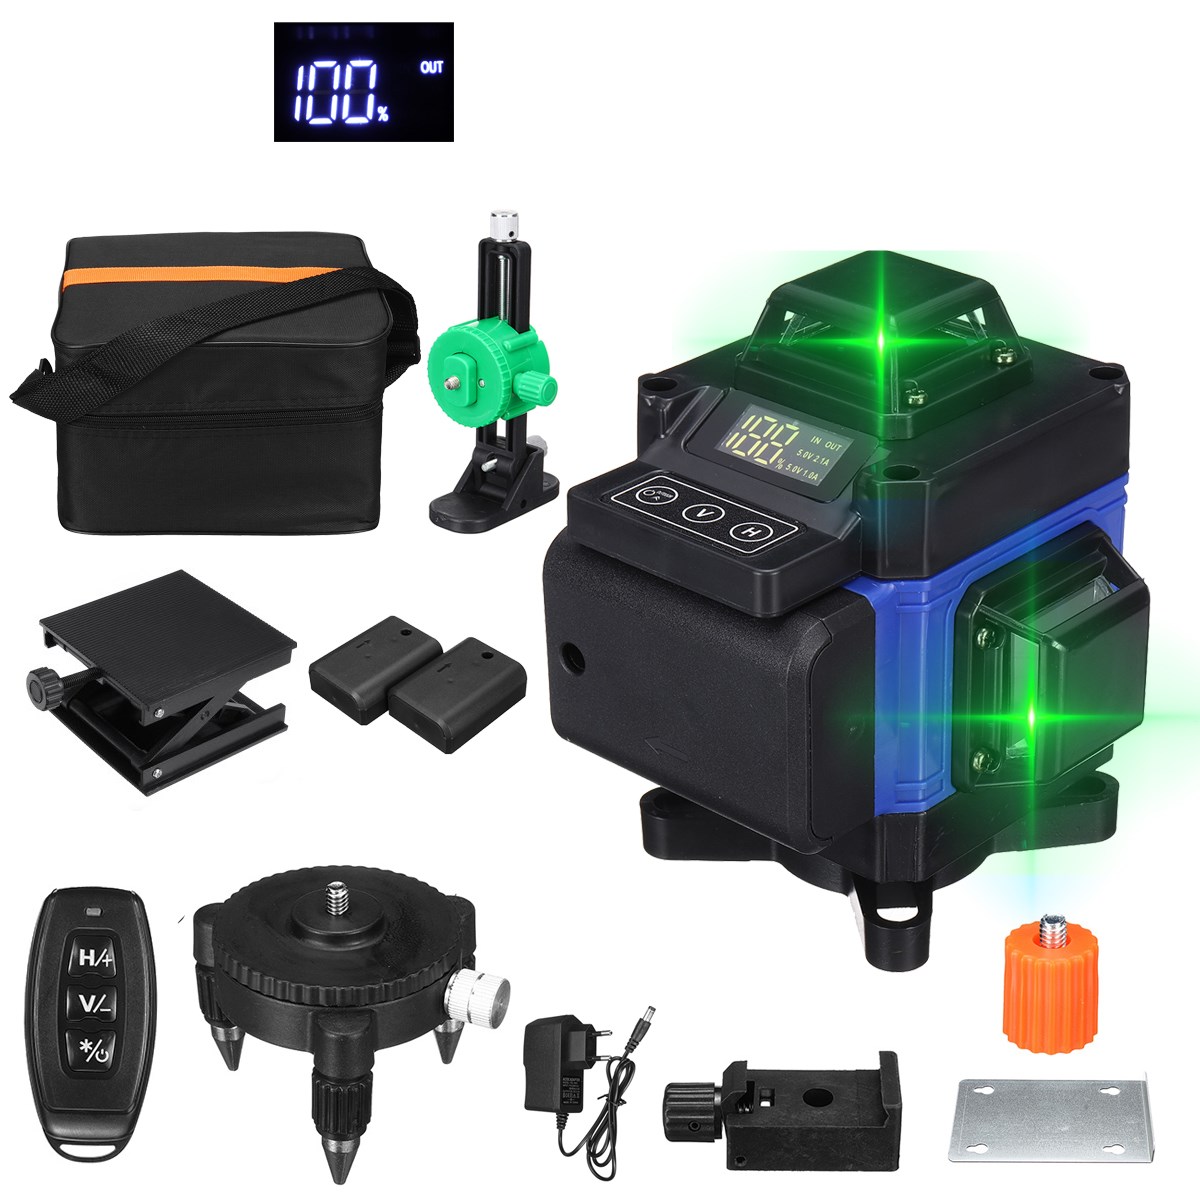 Poziomica laserowa 16 line Green Laser Level App z EU za $40.99 / ~173zł